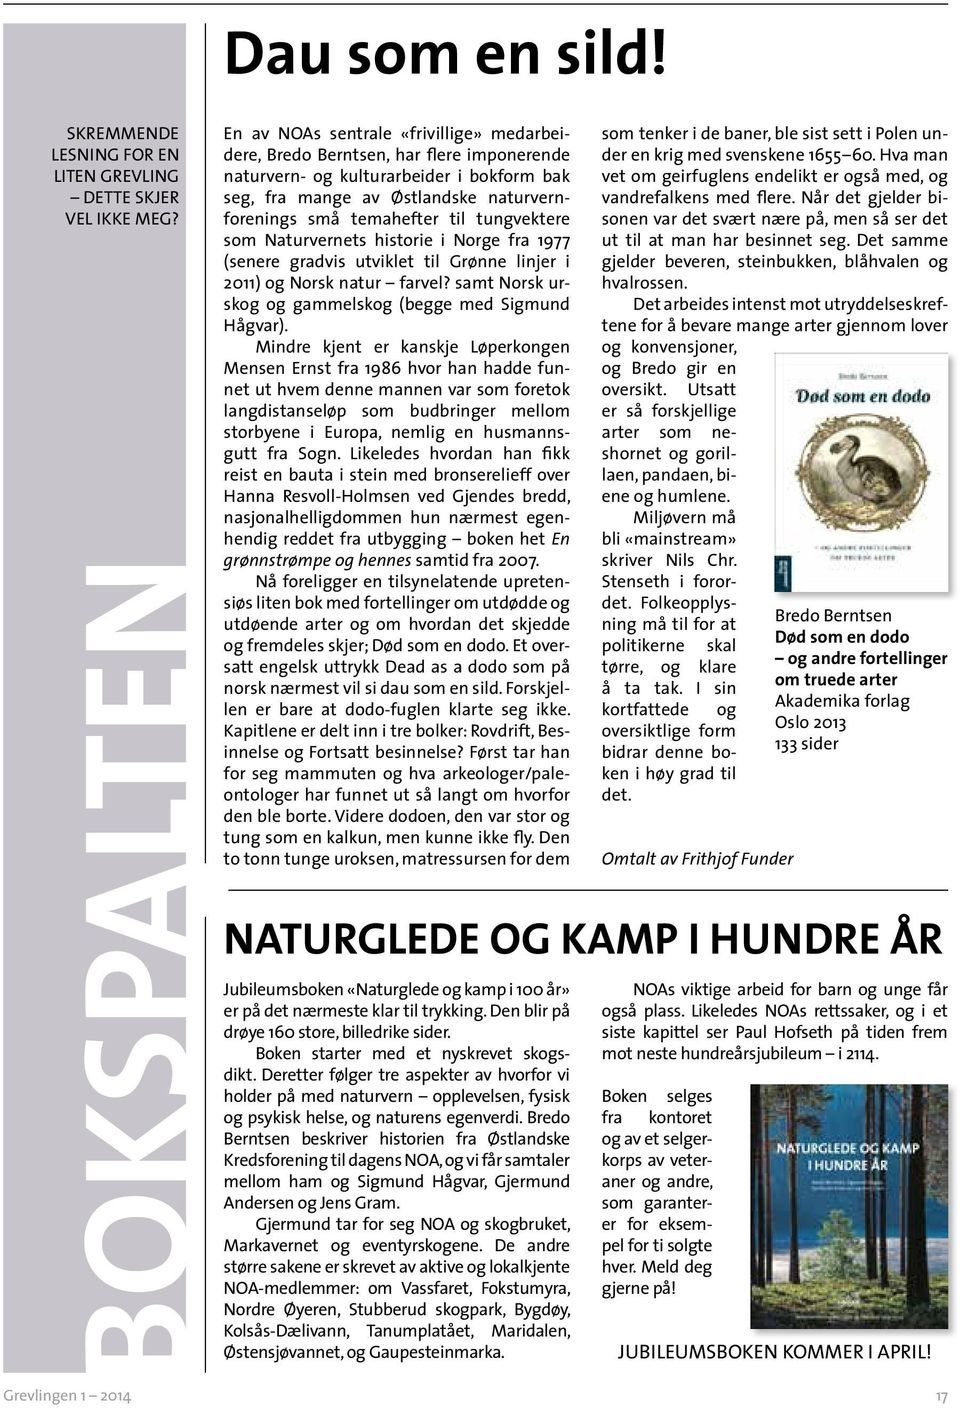 temahefter til tungvektere som Naturvernets historie i Norge fra 1977 (senere gradvis utviklet til Grønne linjer i 2011) og Norsk natur farvel?